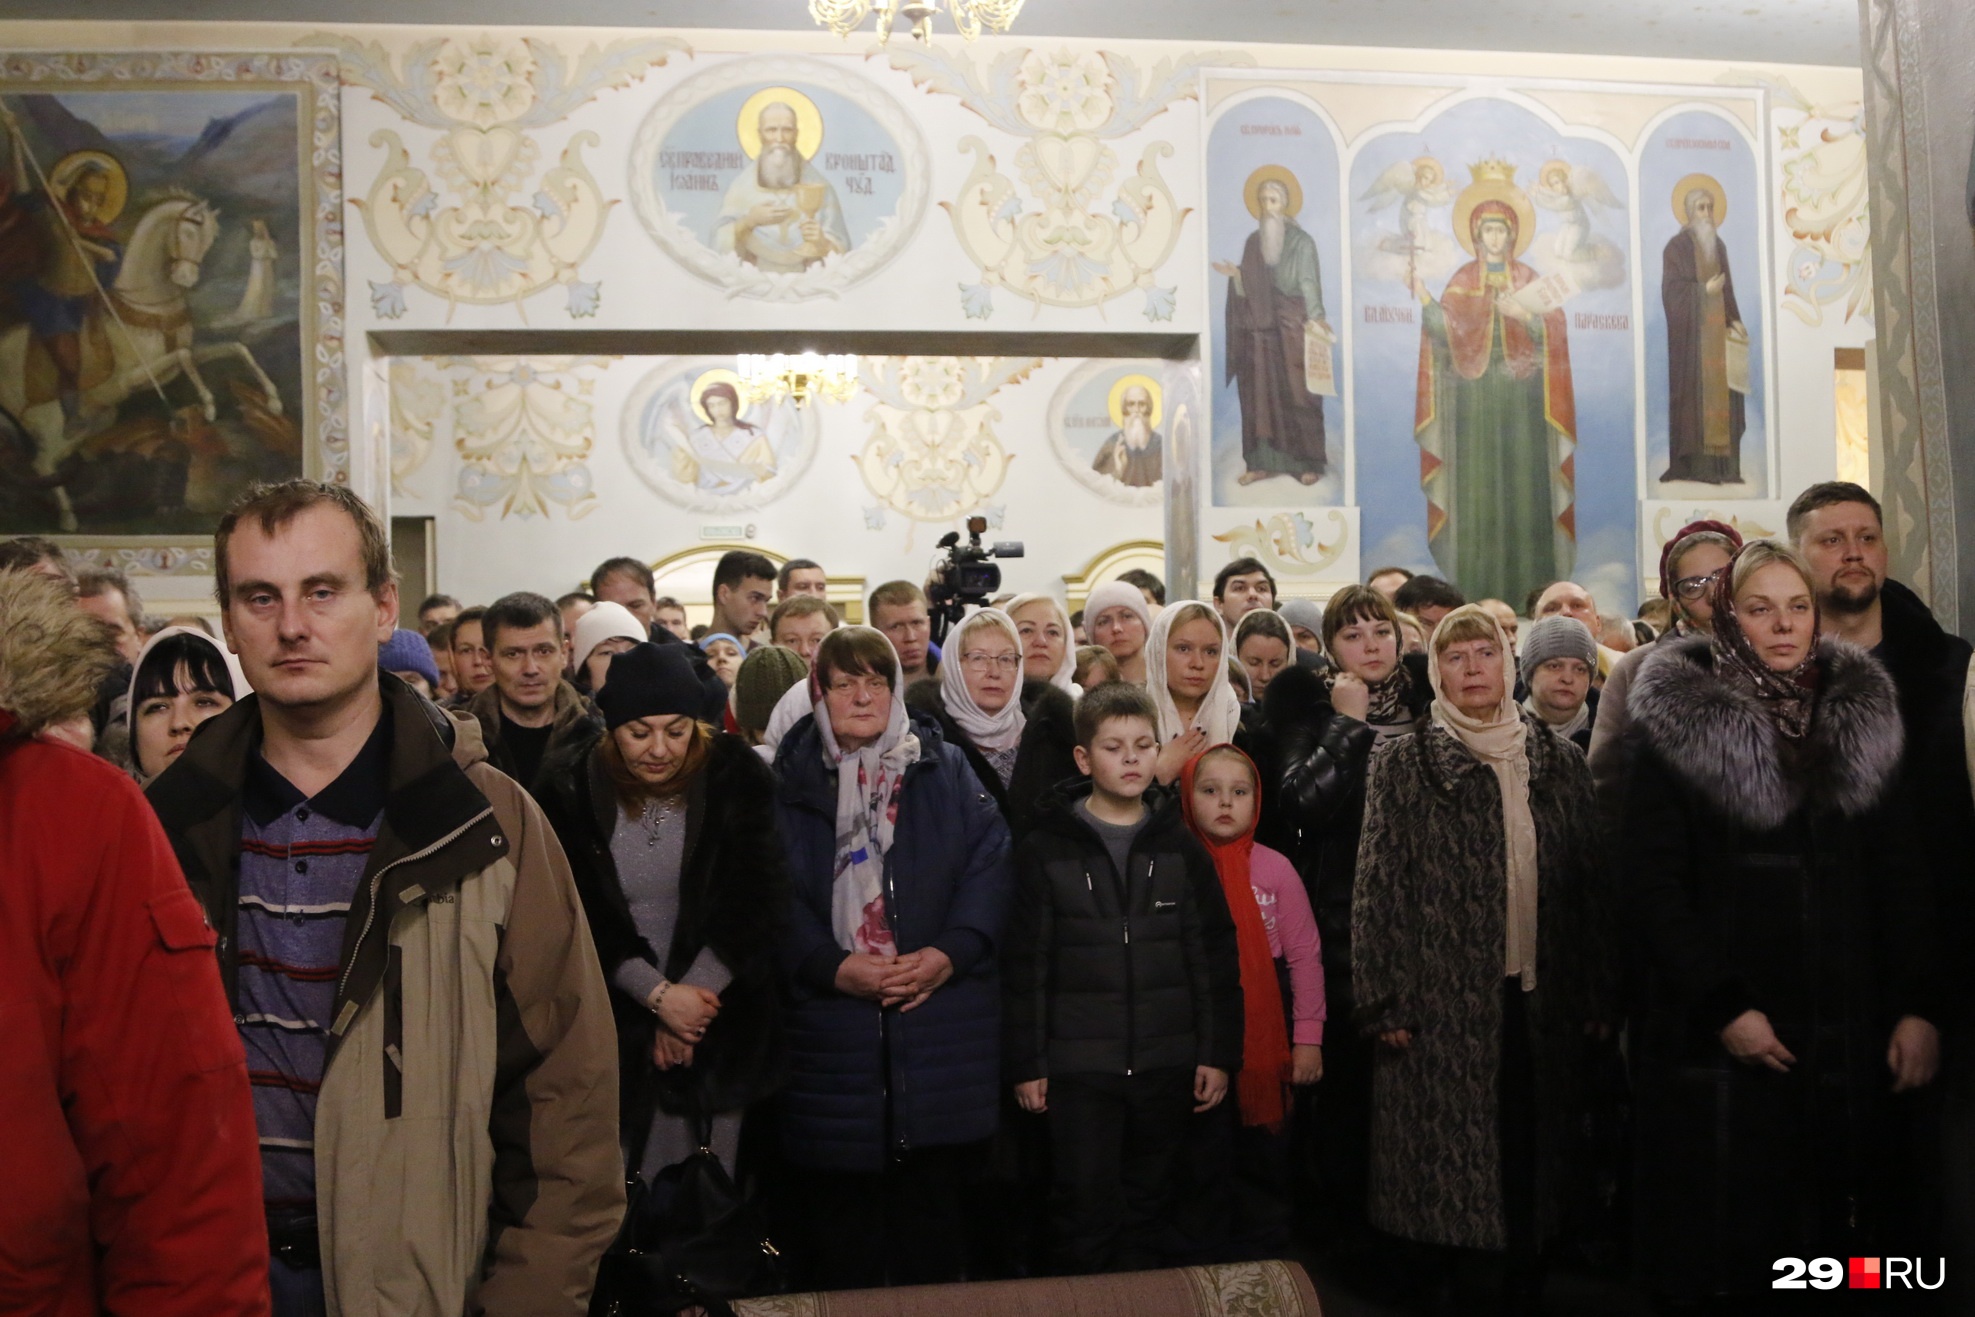 Сегодня, 7 января, митрополит Корнилий совершит в Ильинском соборе великую вечерню. Начало богослужения в 16:00